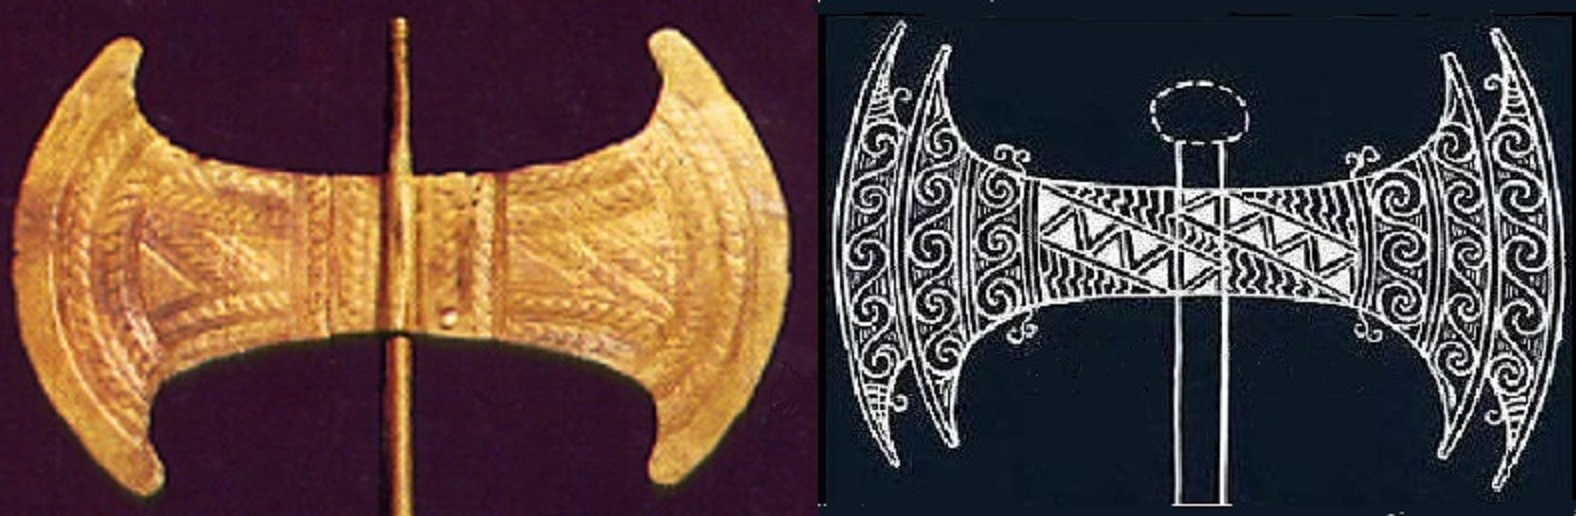 Minoan double axes